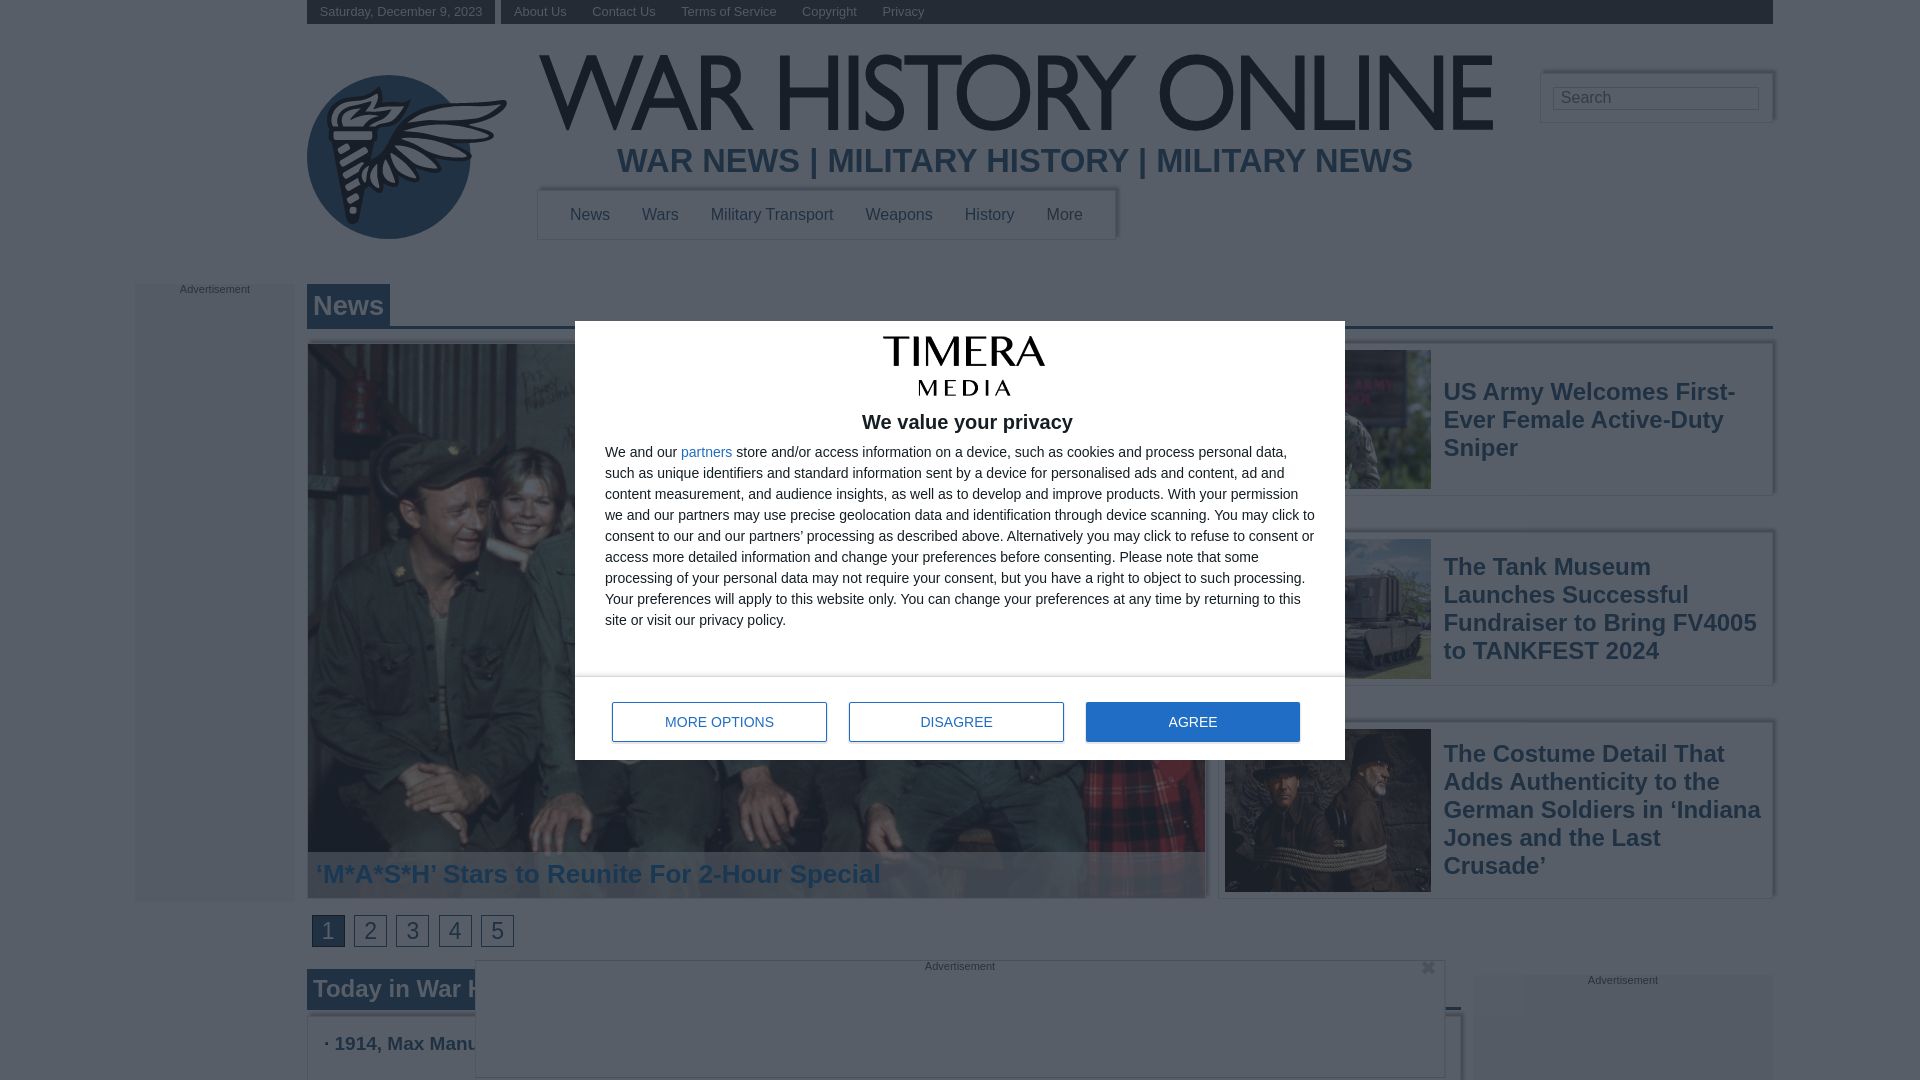 Website status warhistoryonline.com is   ONLINE